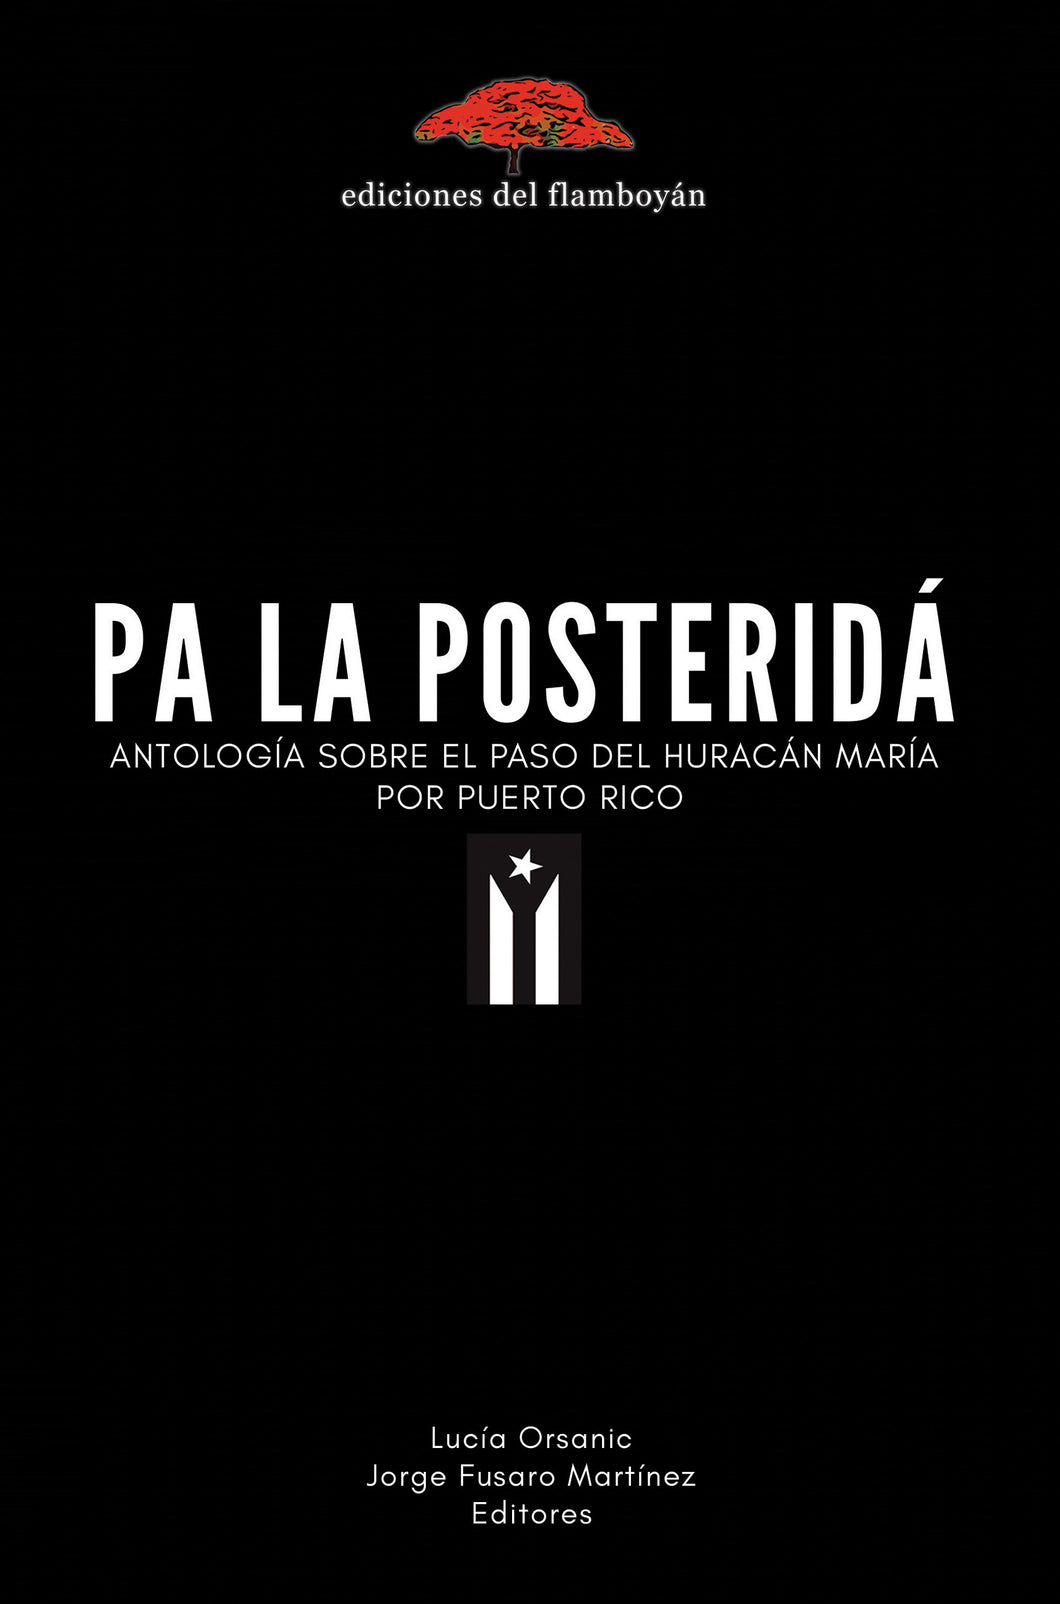 Pa la posteridá: Antología sobre el paso del huracán María por Puerto Rico. Lucía Orsanic & Jorge Fusaro Martínez (Eds.)